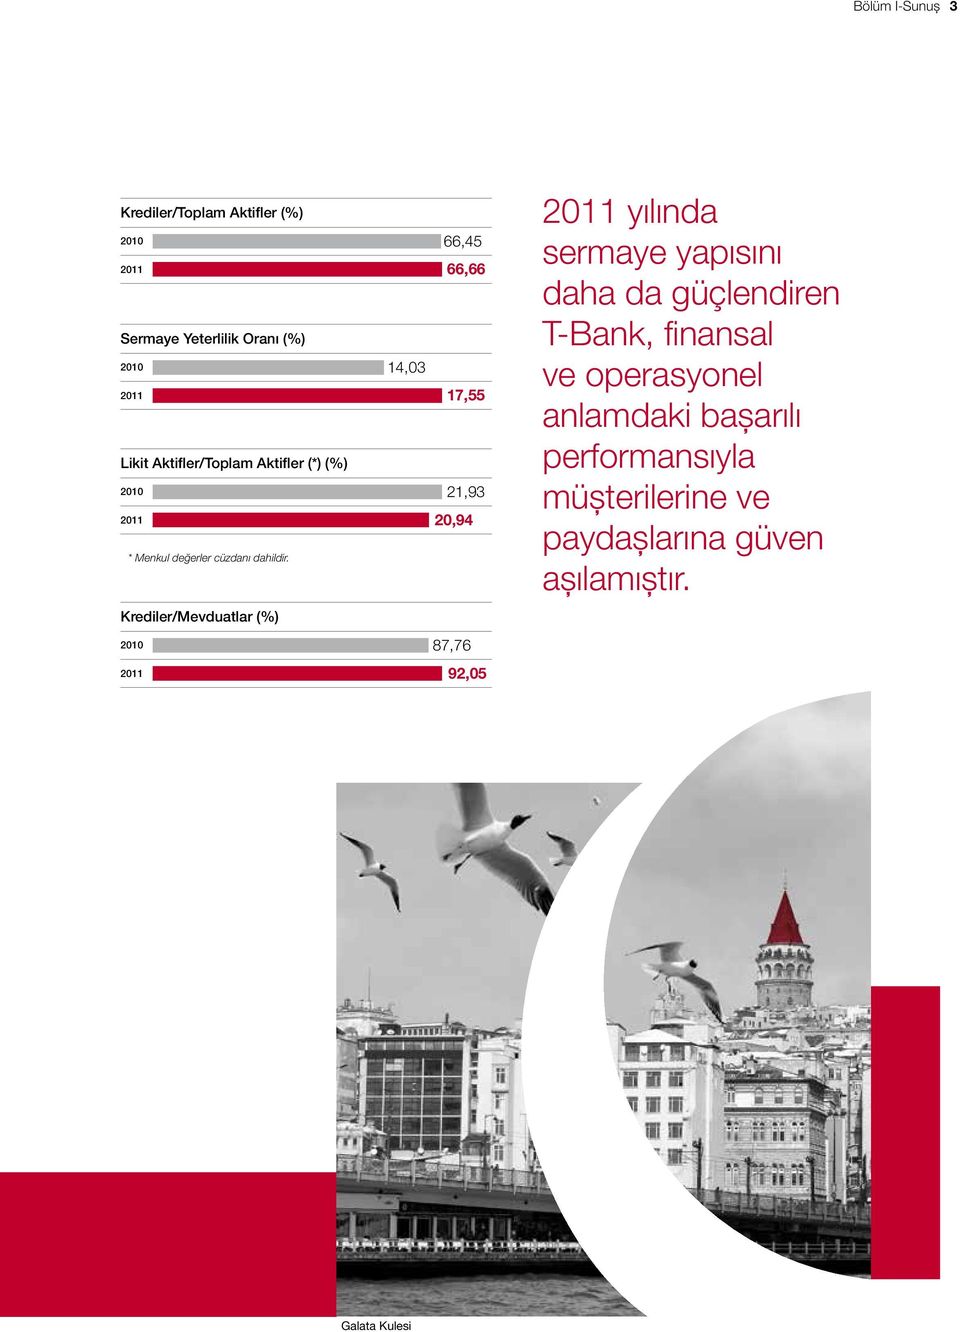 Krediler/Mevduatlar (%) 2010 87,76 2011 yılında sermaye yapısını daha da güçlendiren T-Bank, finansal ve